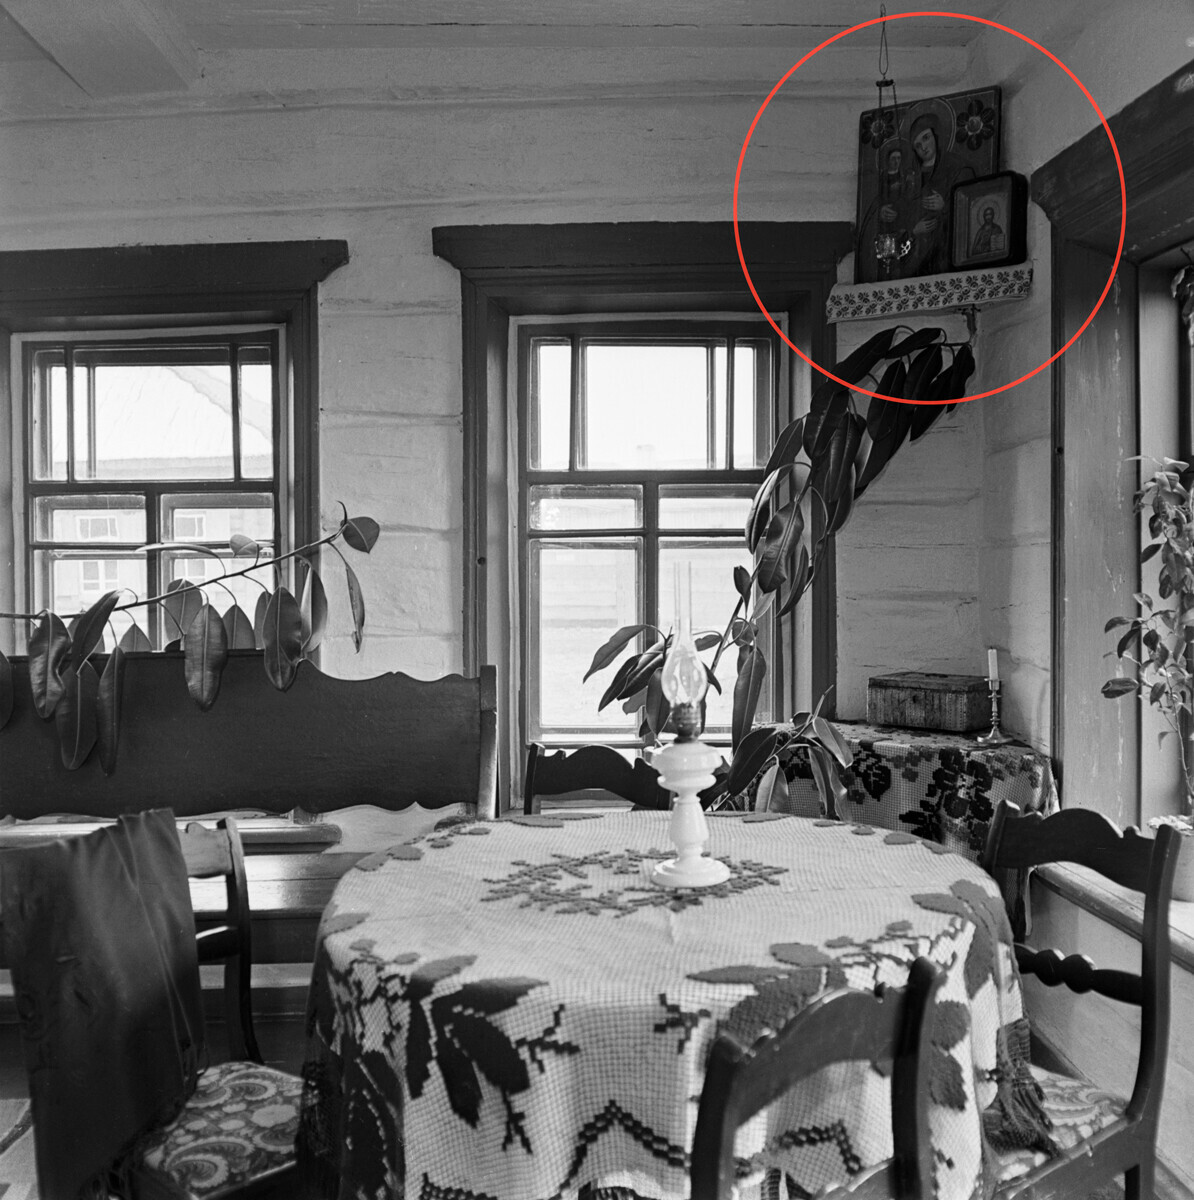 Експозиција на соба во куќата на селанецот Зирјанов, во која живеел револуционерот Владимир Илич Ленин во текот на своето прогонство 1897-1898. Село Шушенское.

